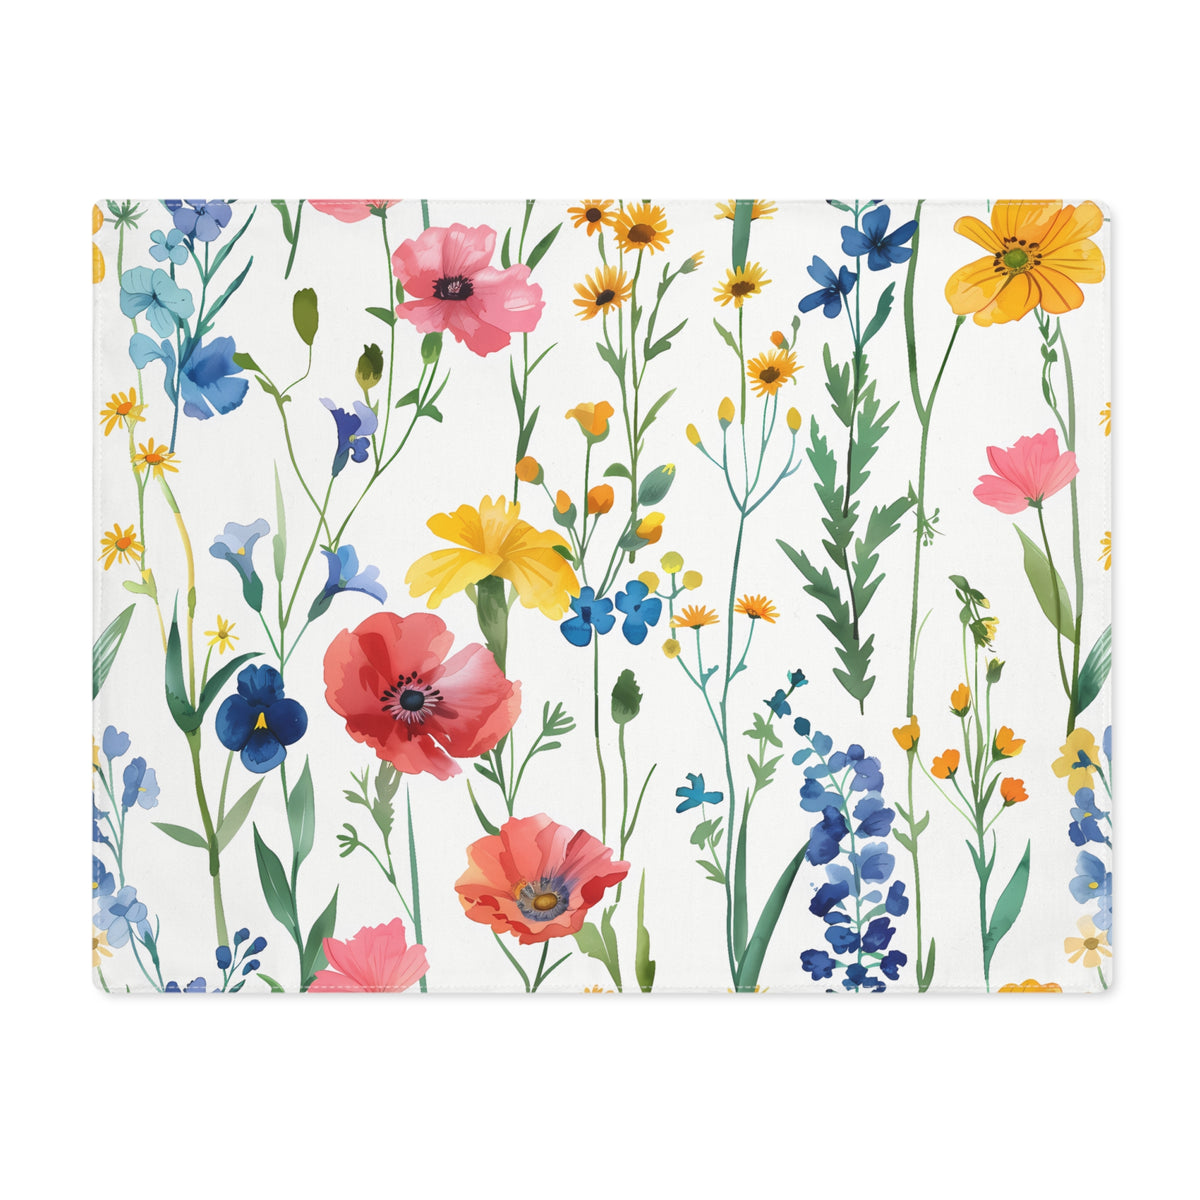 Decorative Cotton Place Mat with Floral Wildflower Design (18&quot; x 14&quot;)